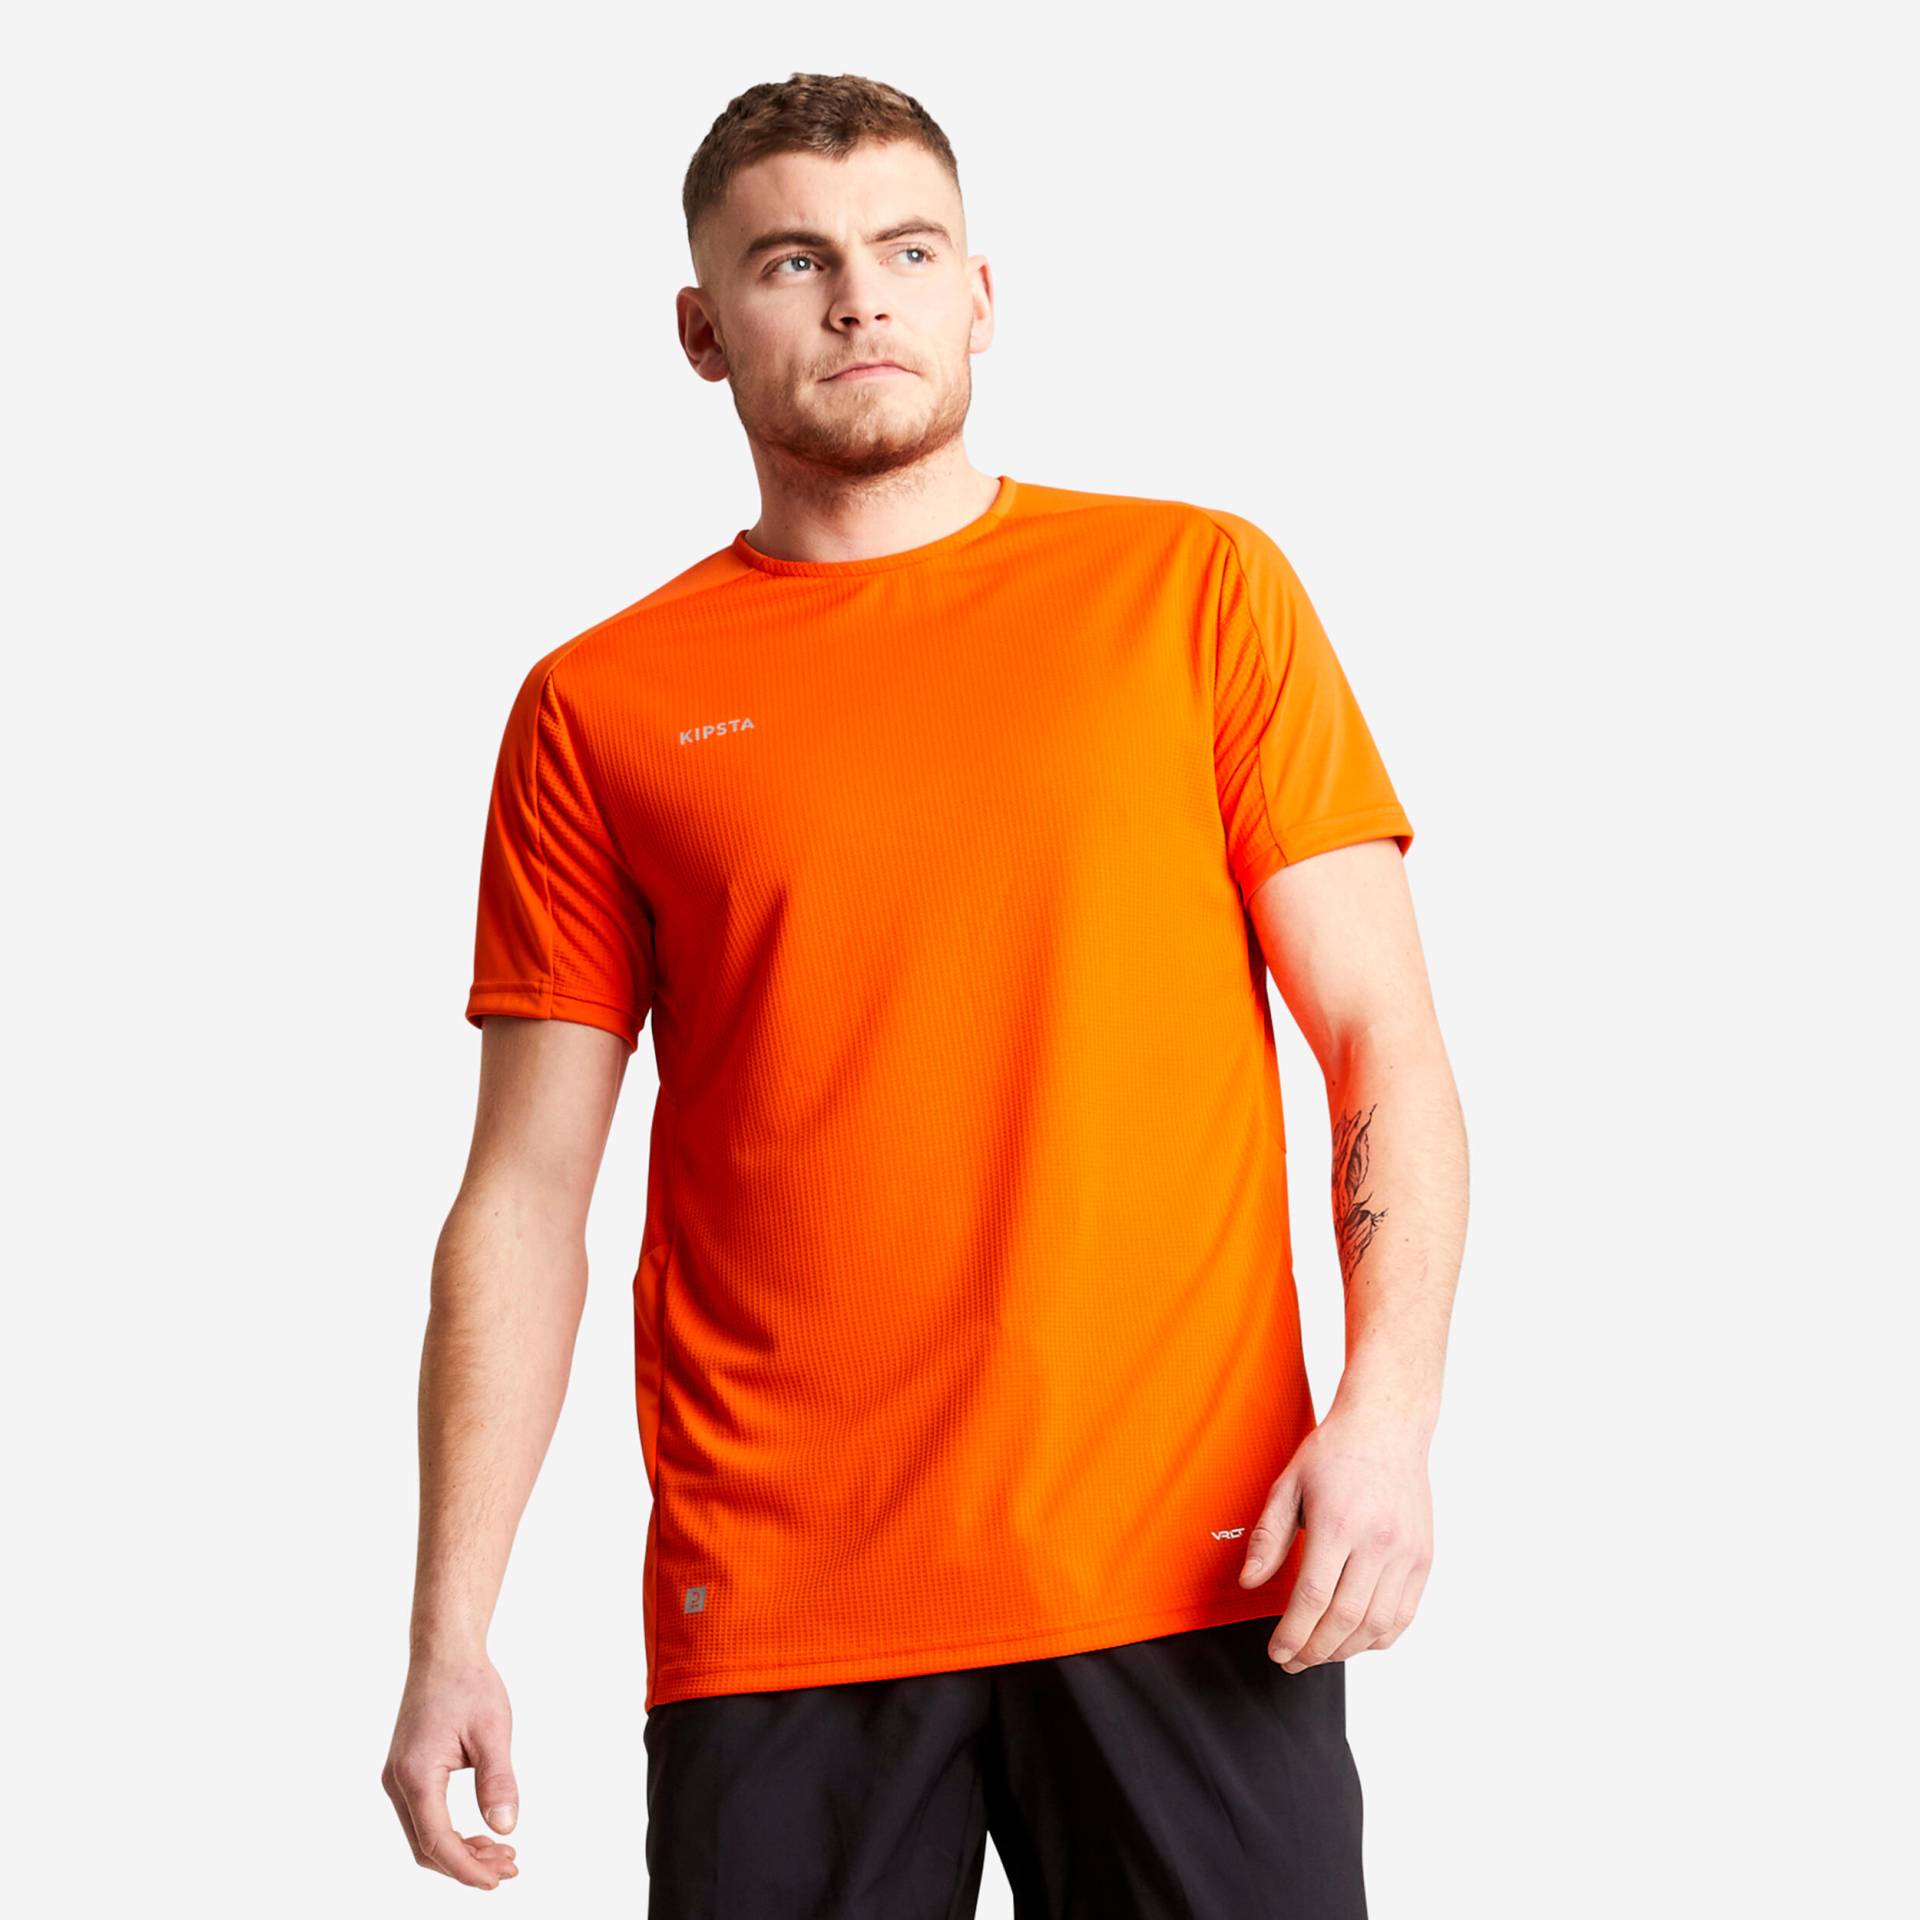 Damen/Herren Fussball Trikot kurzarm - VIRALTO Verein orange von KIPSTA